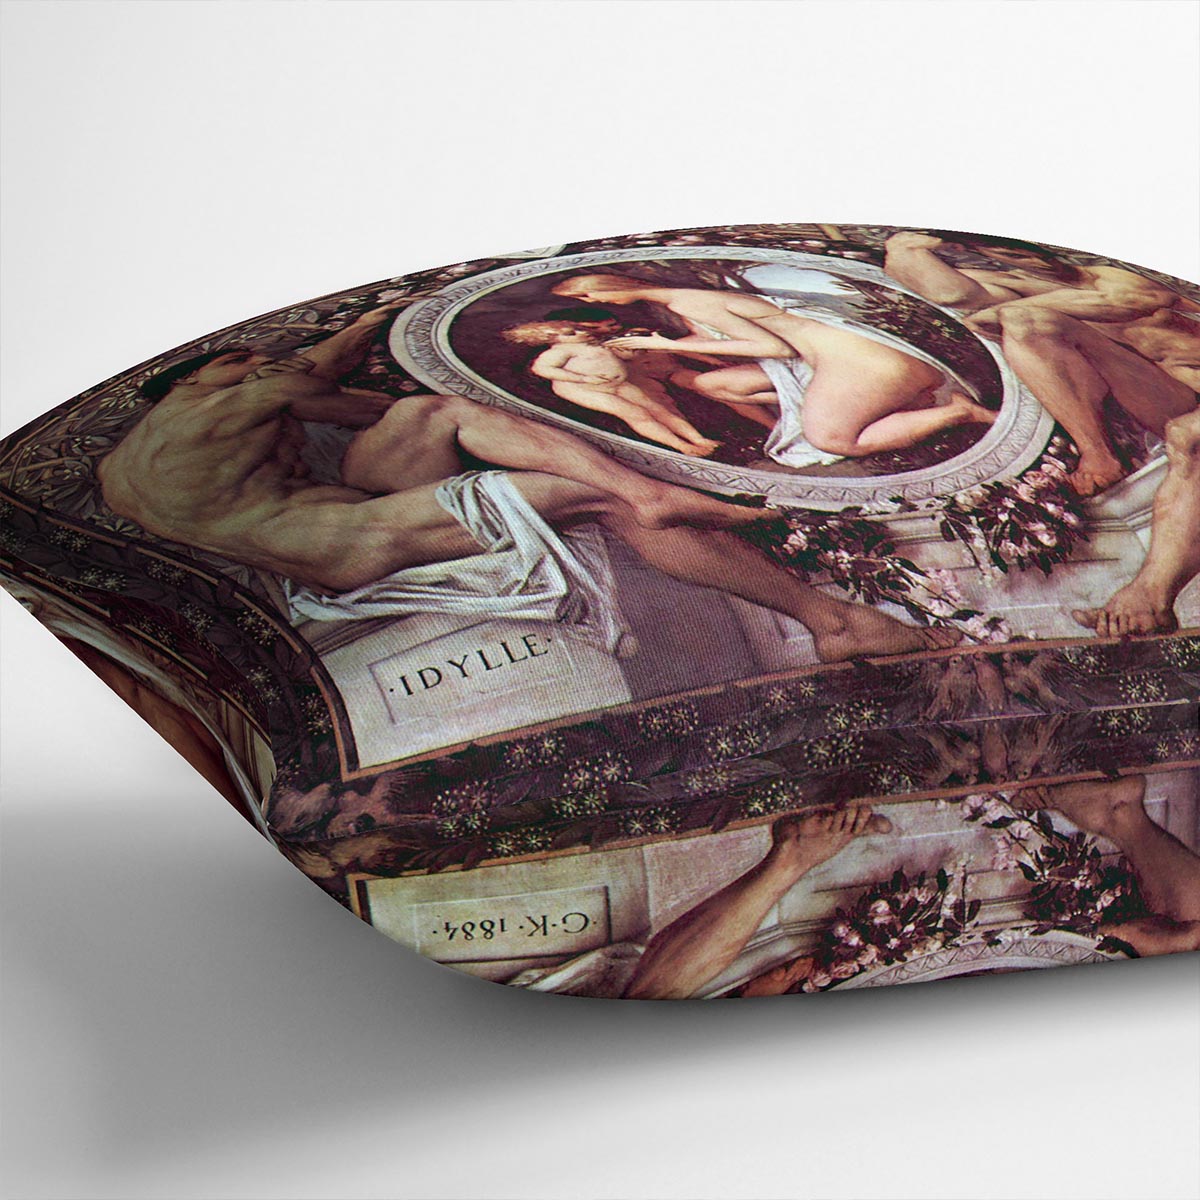 Idyll by Klimt Cushion